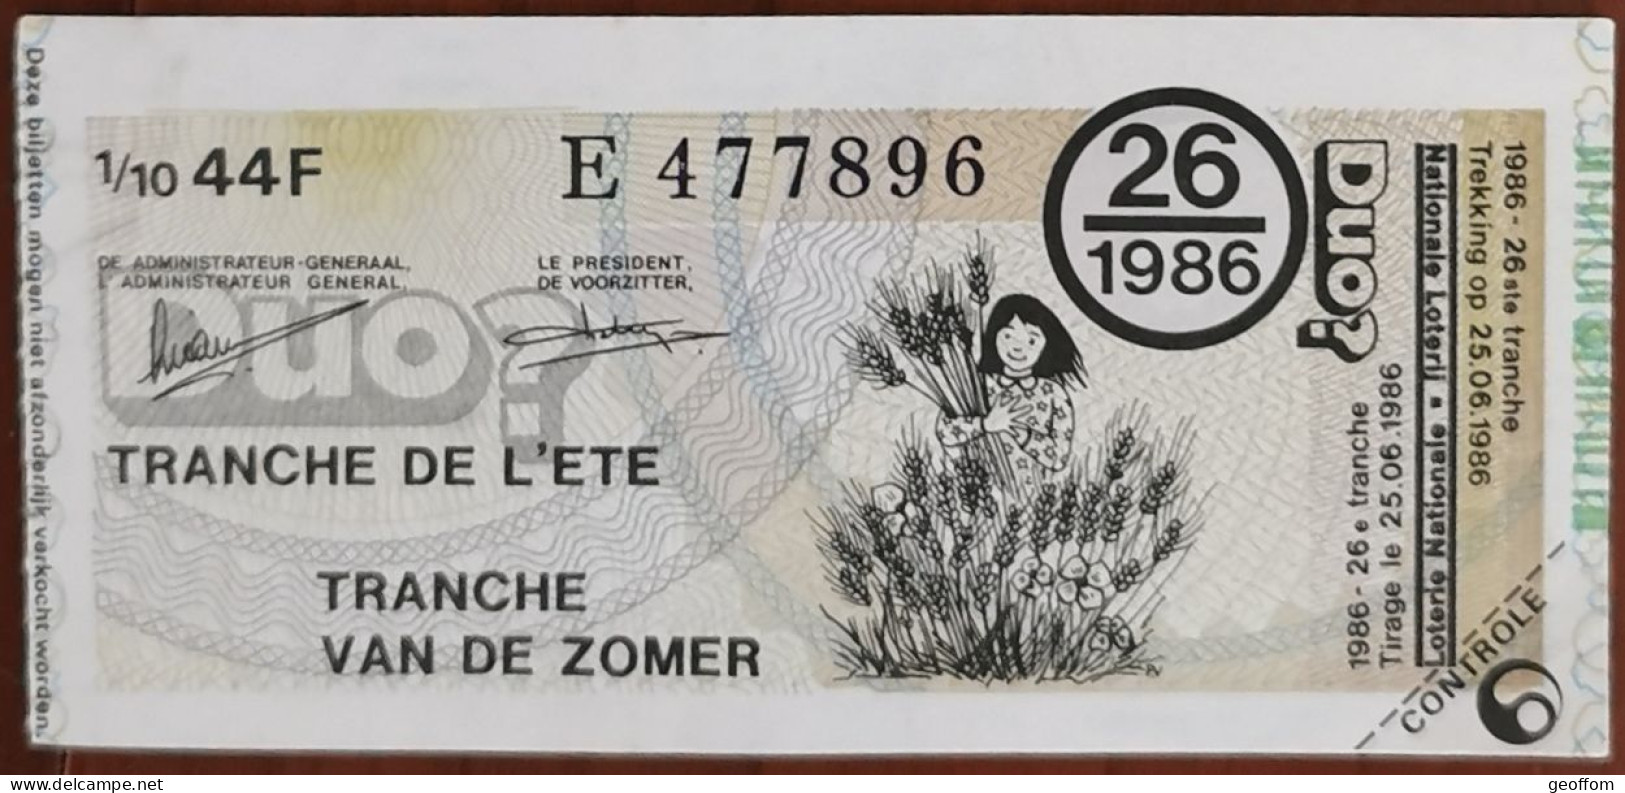 Billet De Loterie Nationale Belgique 1986 26e Tranche De L'Eté - 25-6-1986 - Biglietti Della Lotteria